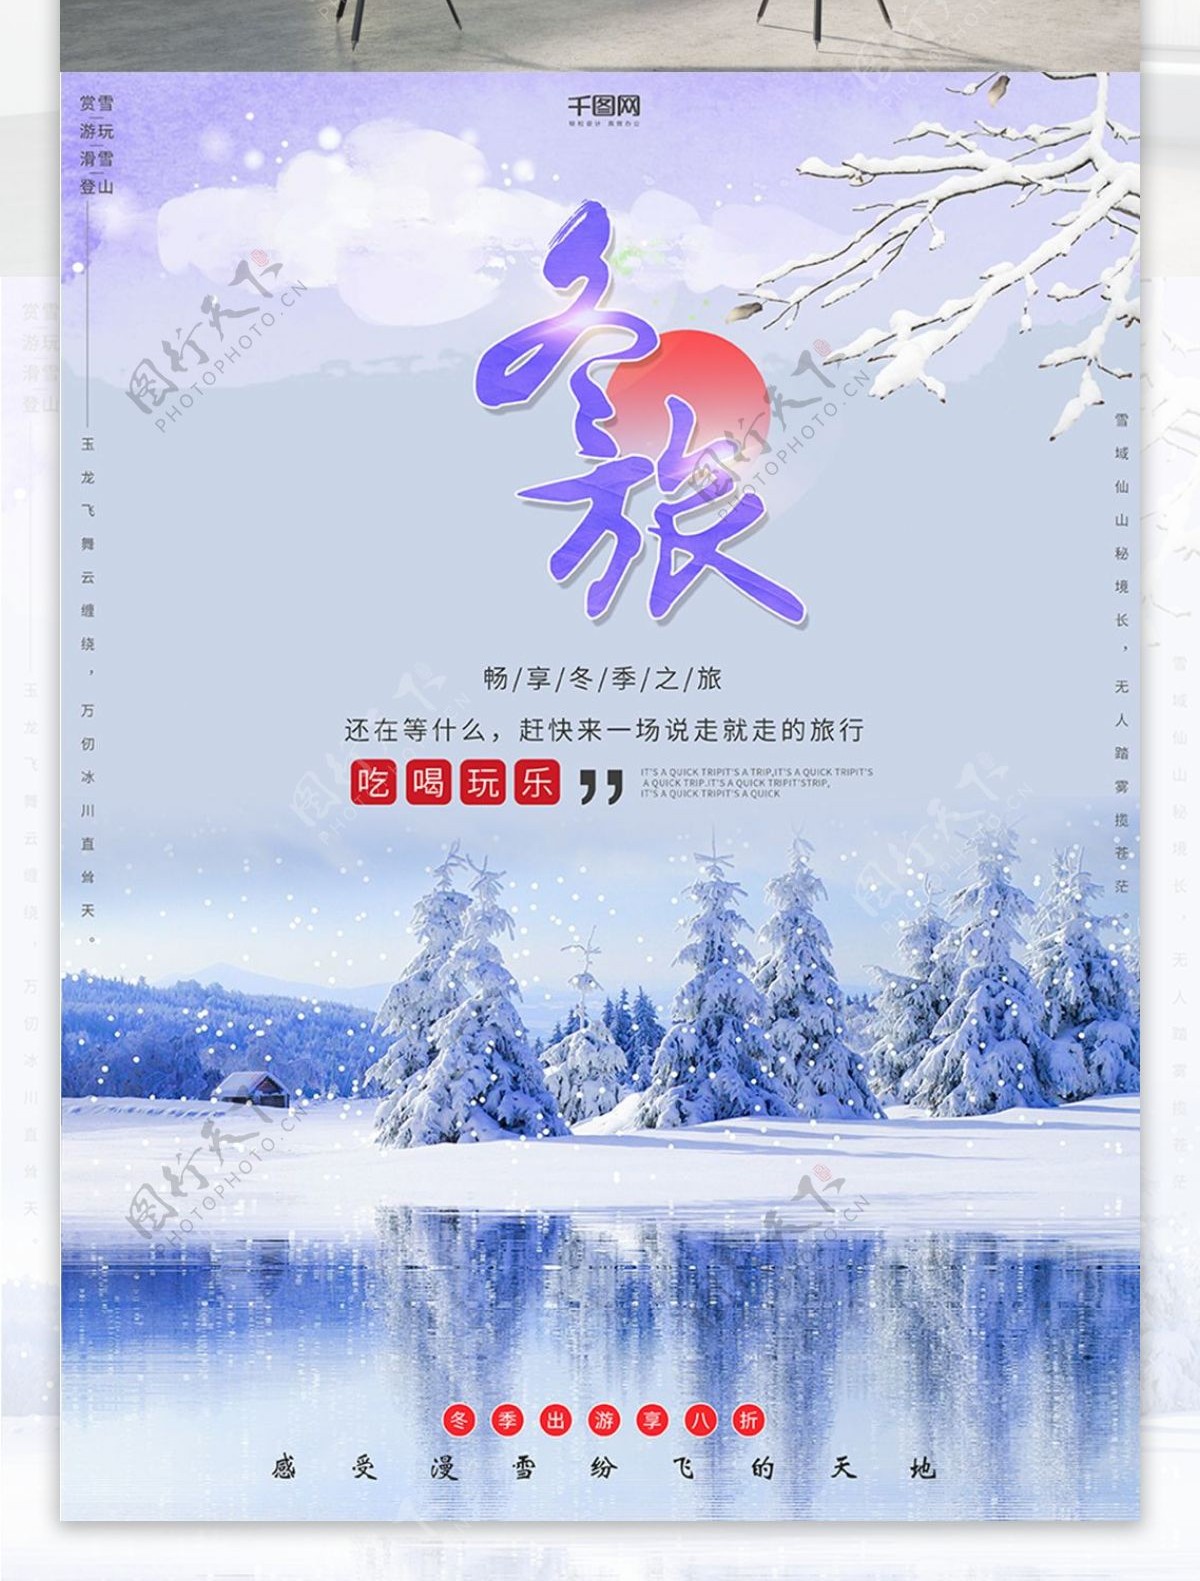 简约清新冬季旅游促销旅行社冬季出游海报